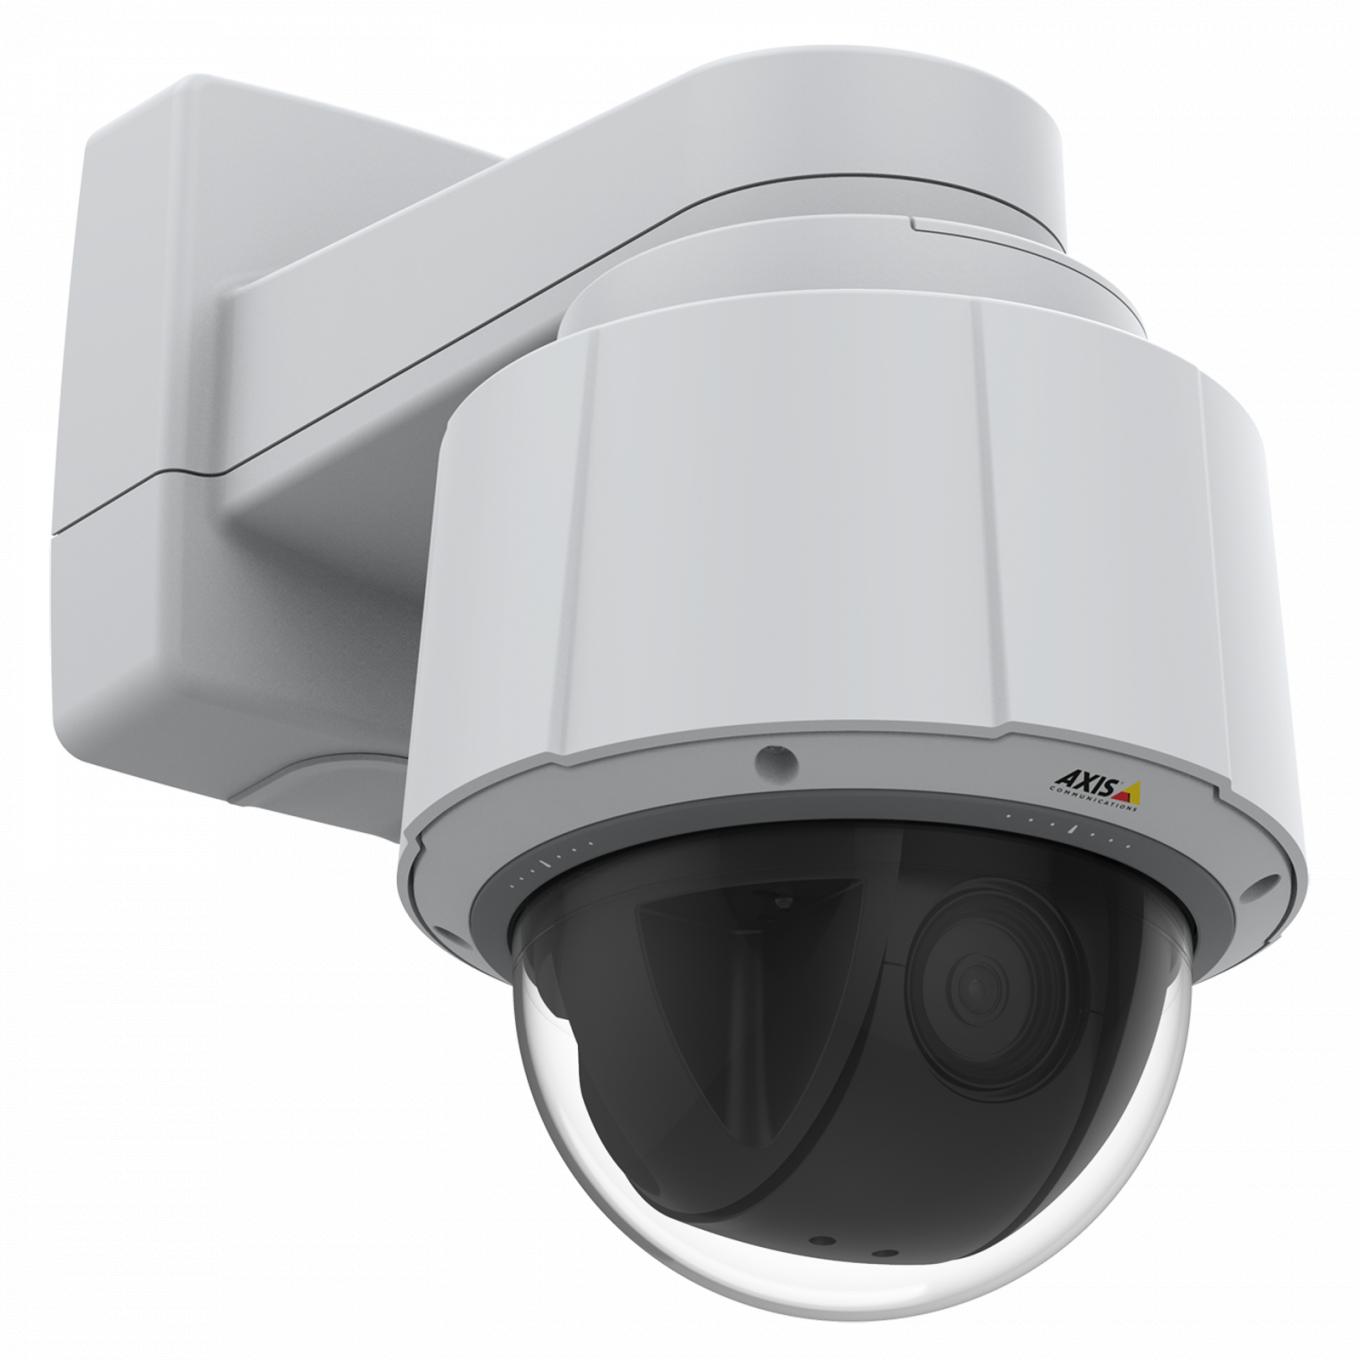 Axis IP Camera Q6075 ma wewnętrzną kamerę PTZ z HDTV 720p i 30-krotnym zoomem optycznym